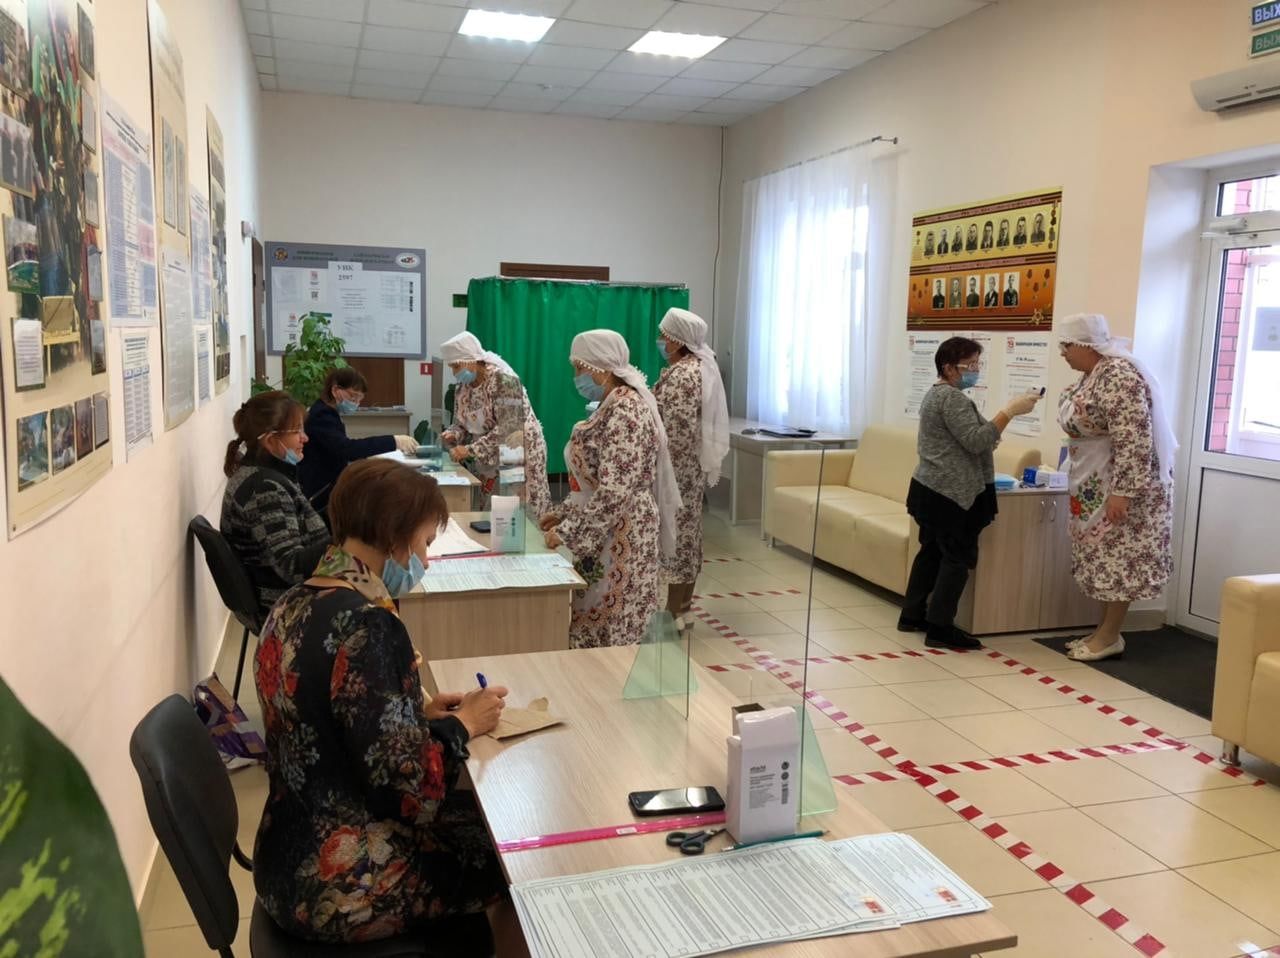 Фольклорный коллектив «Шатлык» из села Утямышево на выборы пришли в национальных костюмах